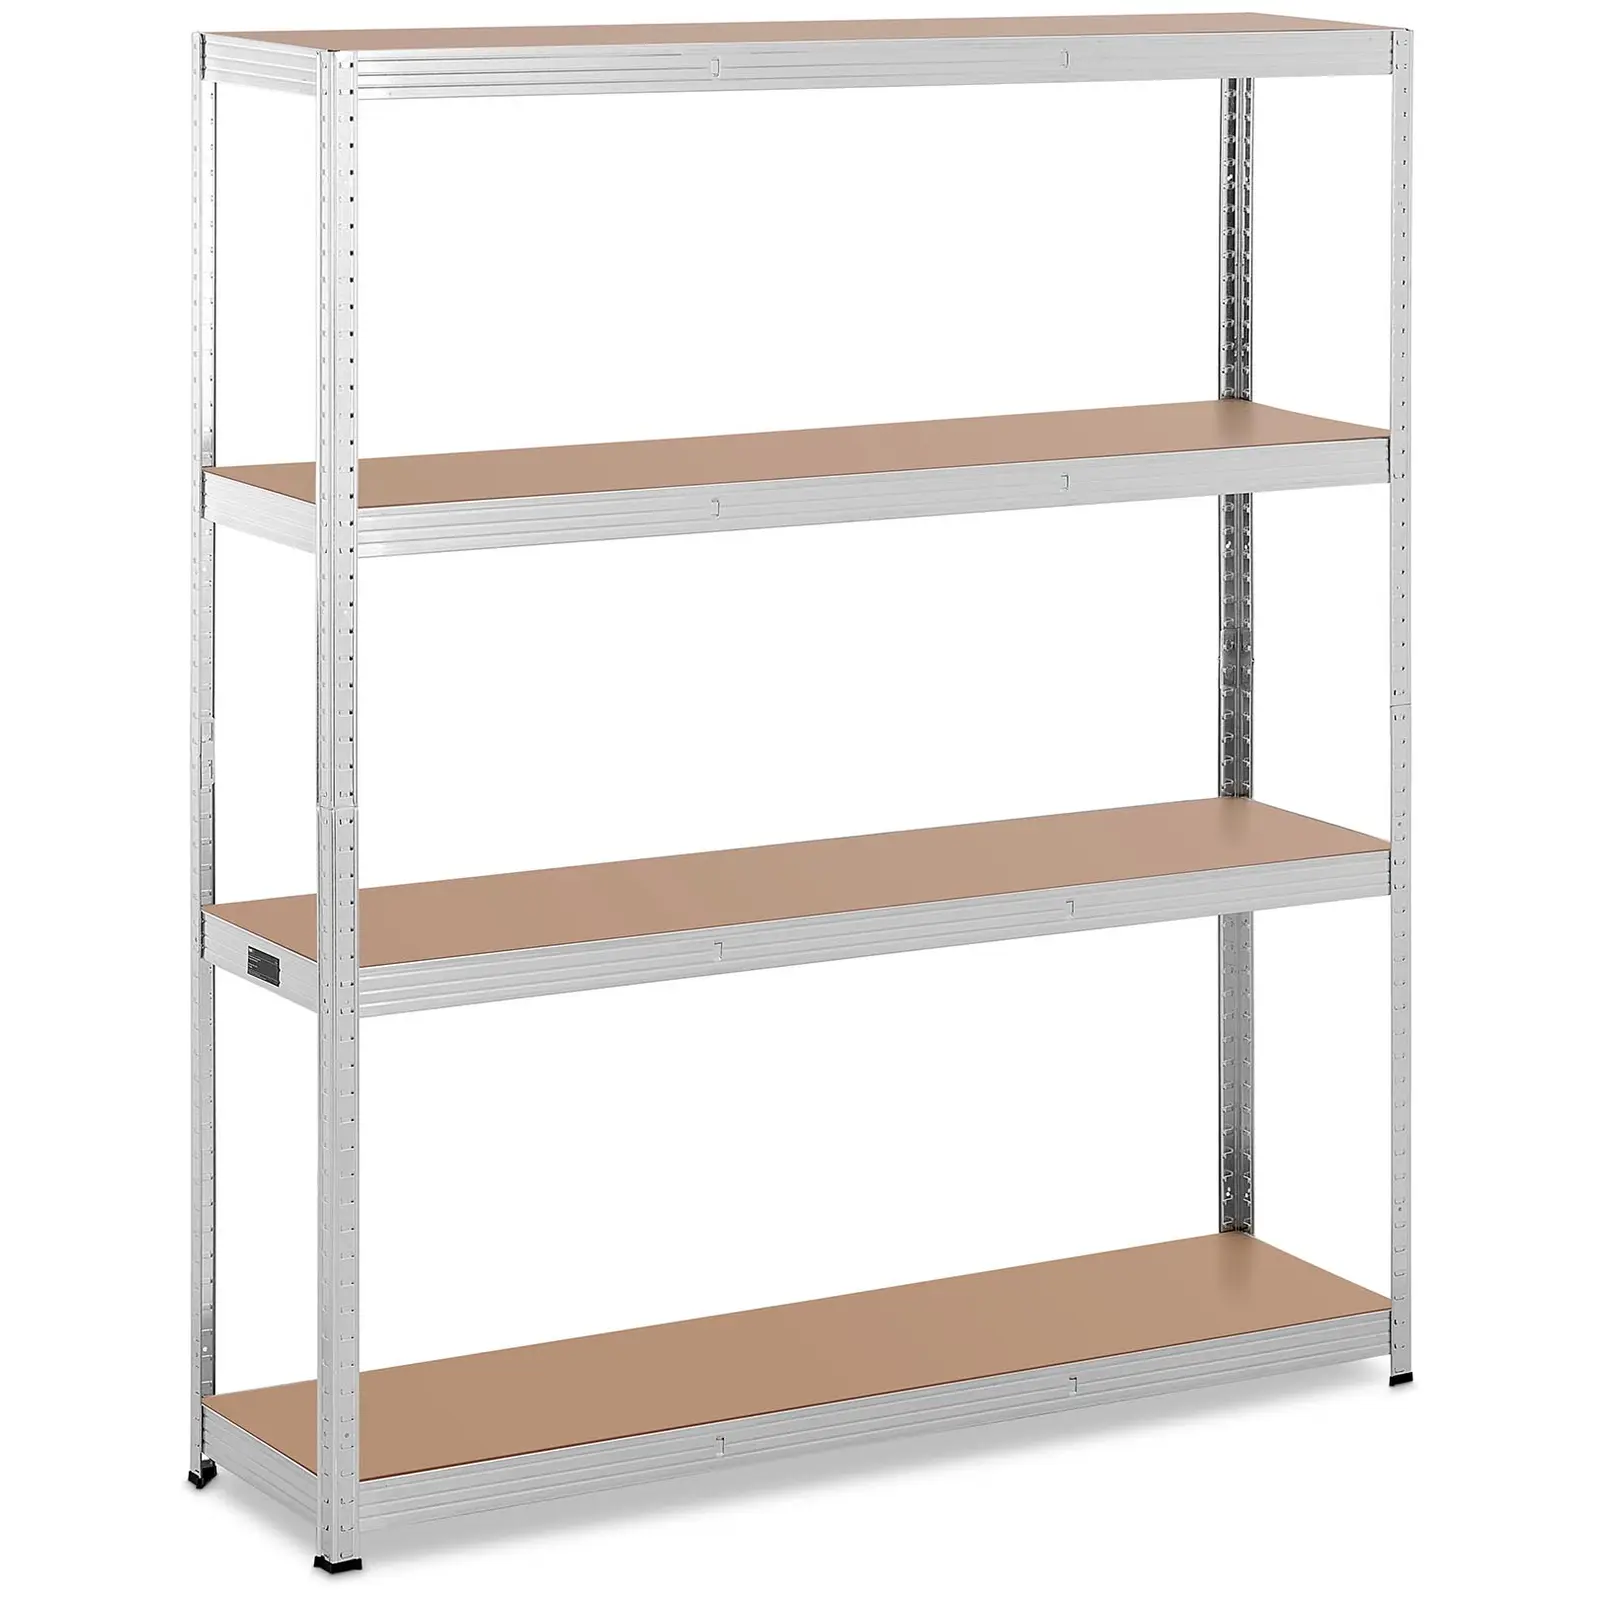 Metal storage rack - 160 x 40 x 180 cm - for 4 x 150 kg - Grey